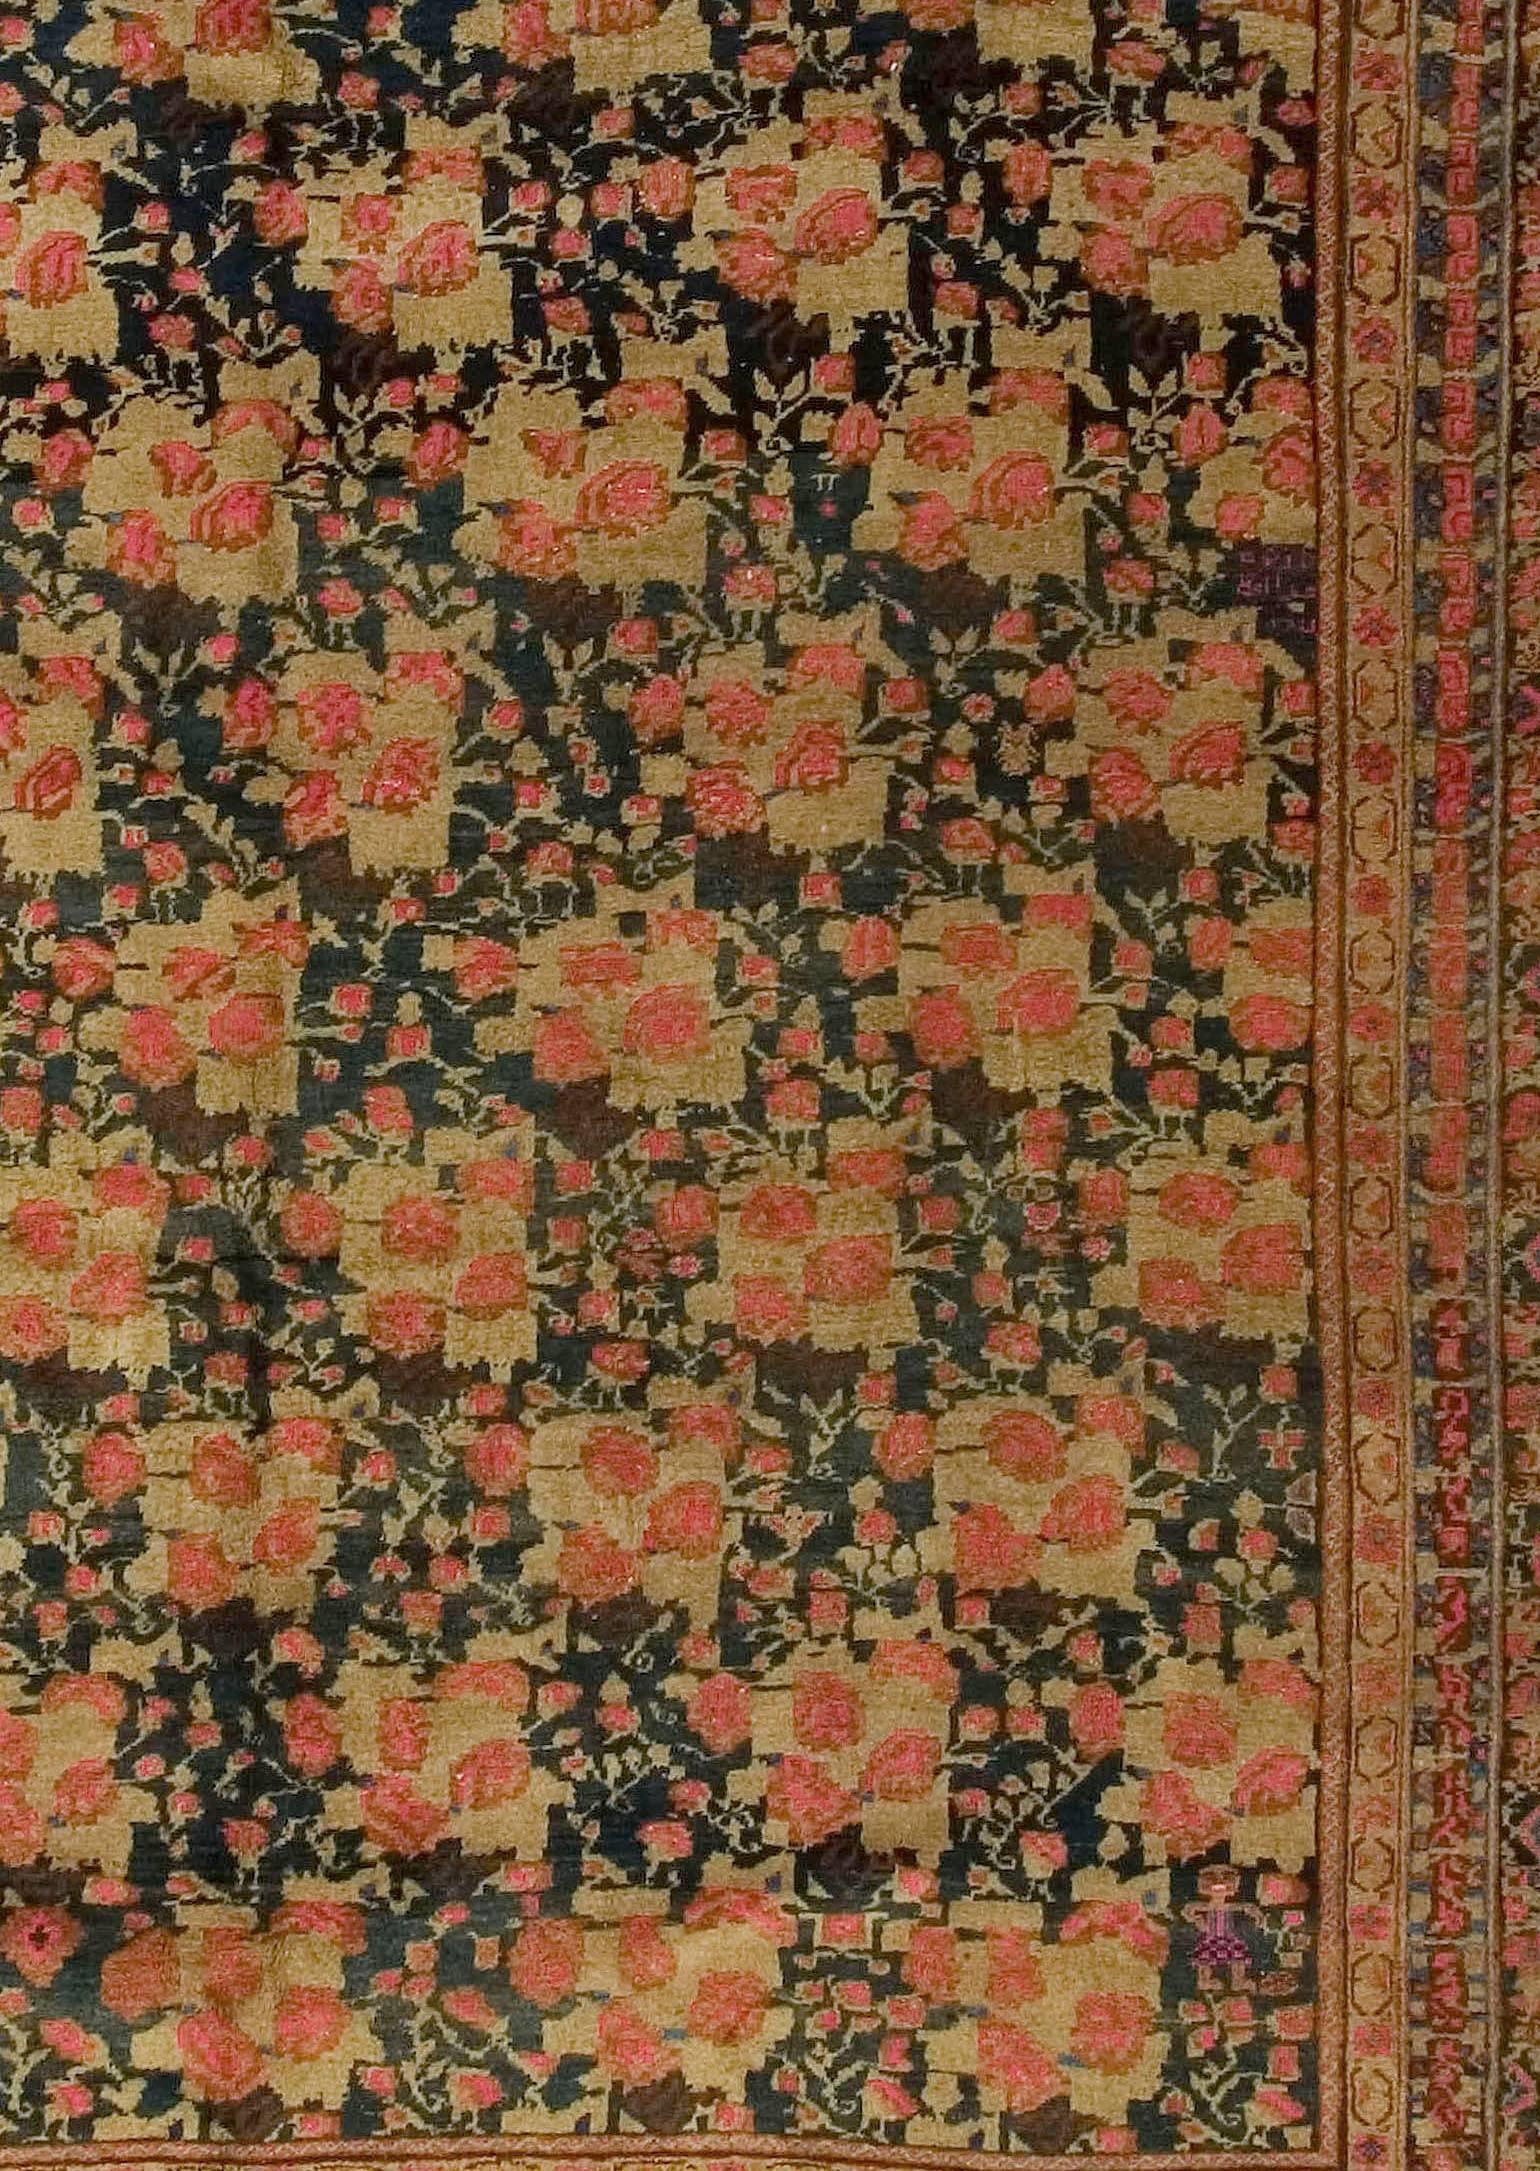 Tapis vintage persan Afshar, circa 1940, 5'7 x 9'9. Les tapis tribaux anciens de la tribu Afshar sont tissés principalement dans le sud-ouest de la Perse et se déclinent en une variété déconcertante de motifs, certains indigènes, d'autres adaptés